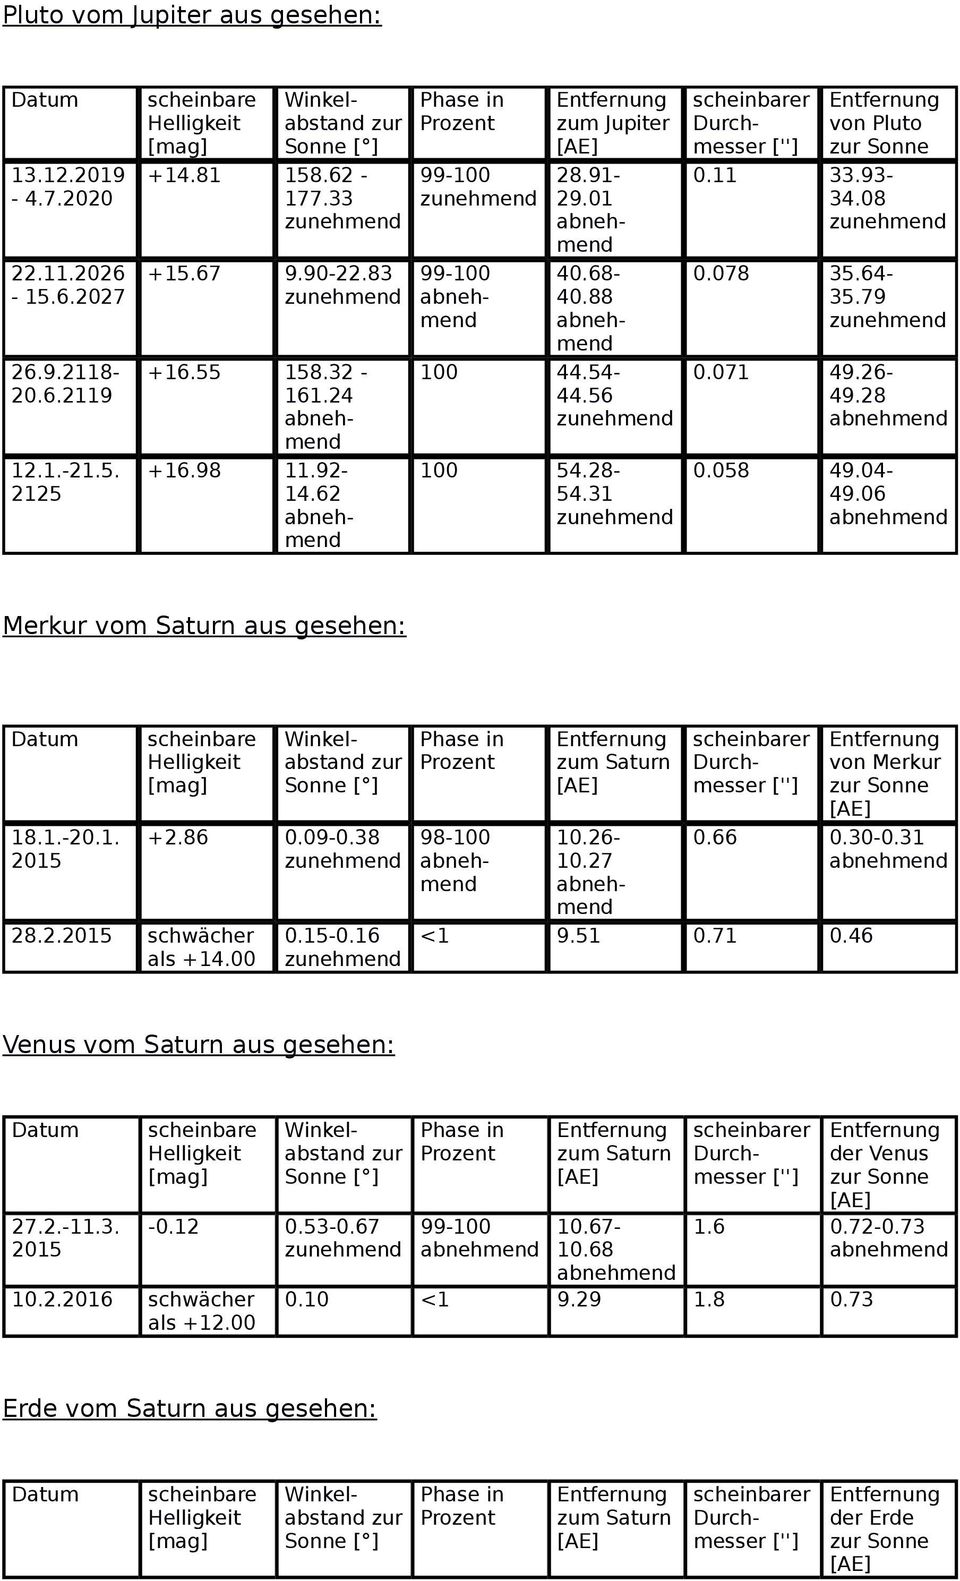 06 Merkur vom Saturn aus gesehen: 18.1.-20.1. 28.2. als +14.00 +2.86 0.09-0.38 0.15-0.16 Saturn von Merkur 0.66 0.30-0.31 <1 9.51 0.71 0.